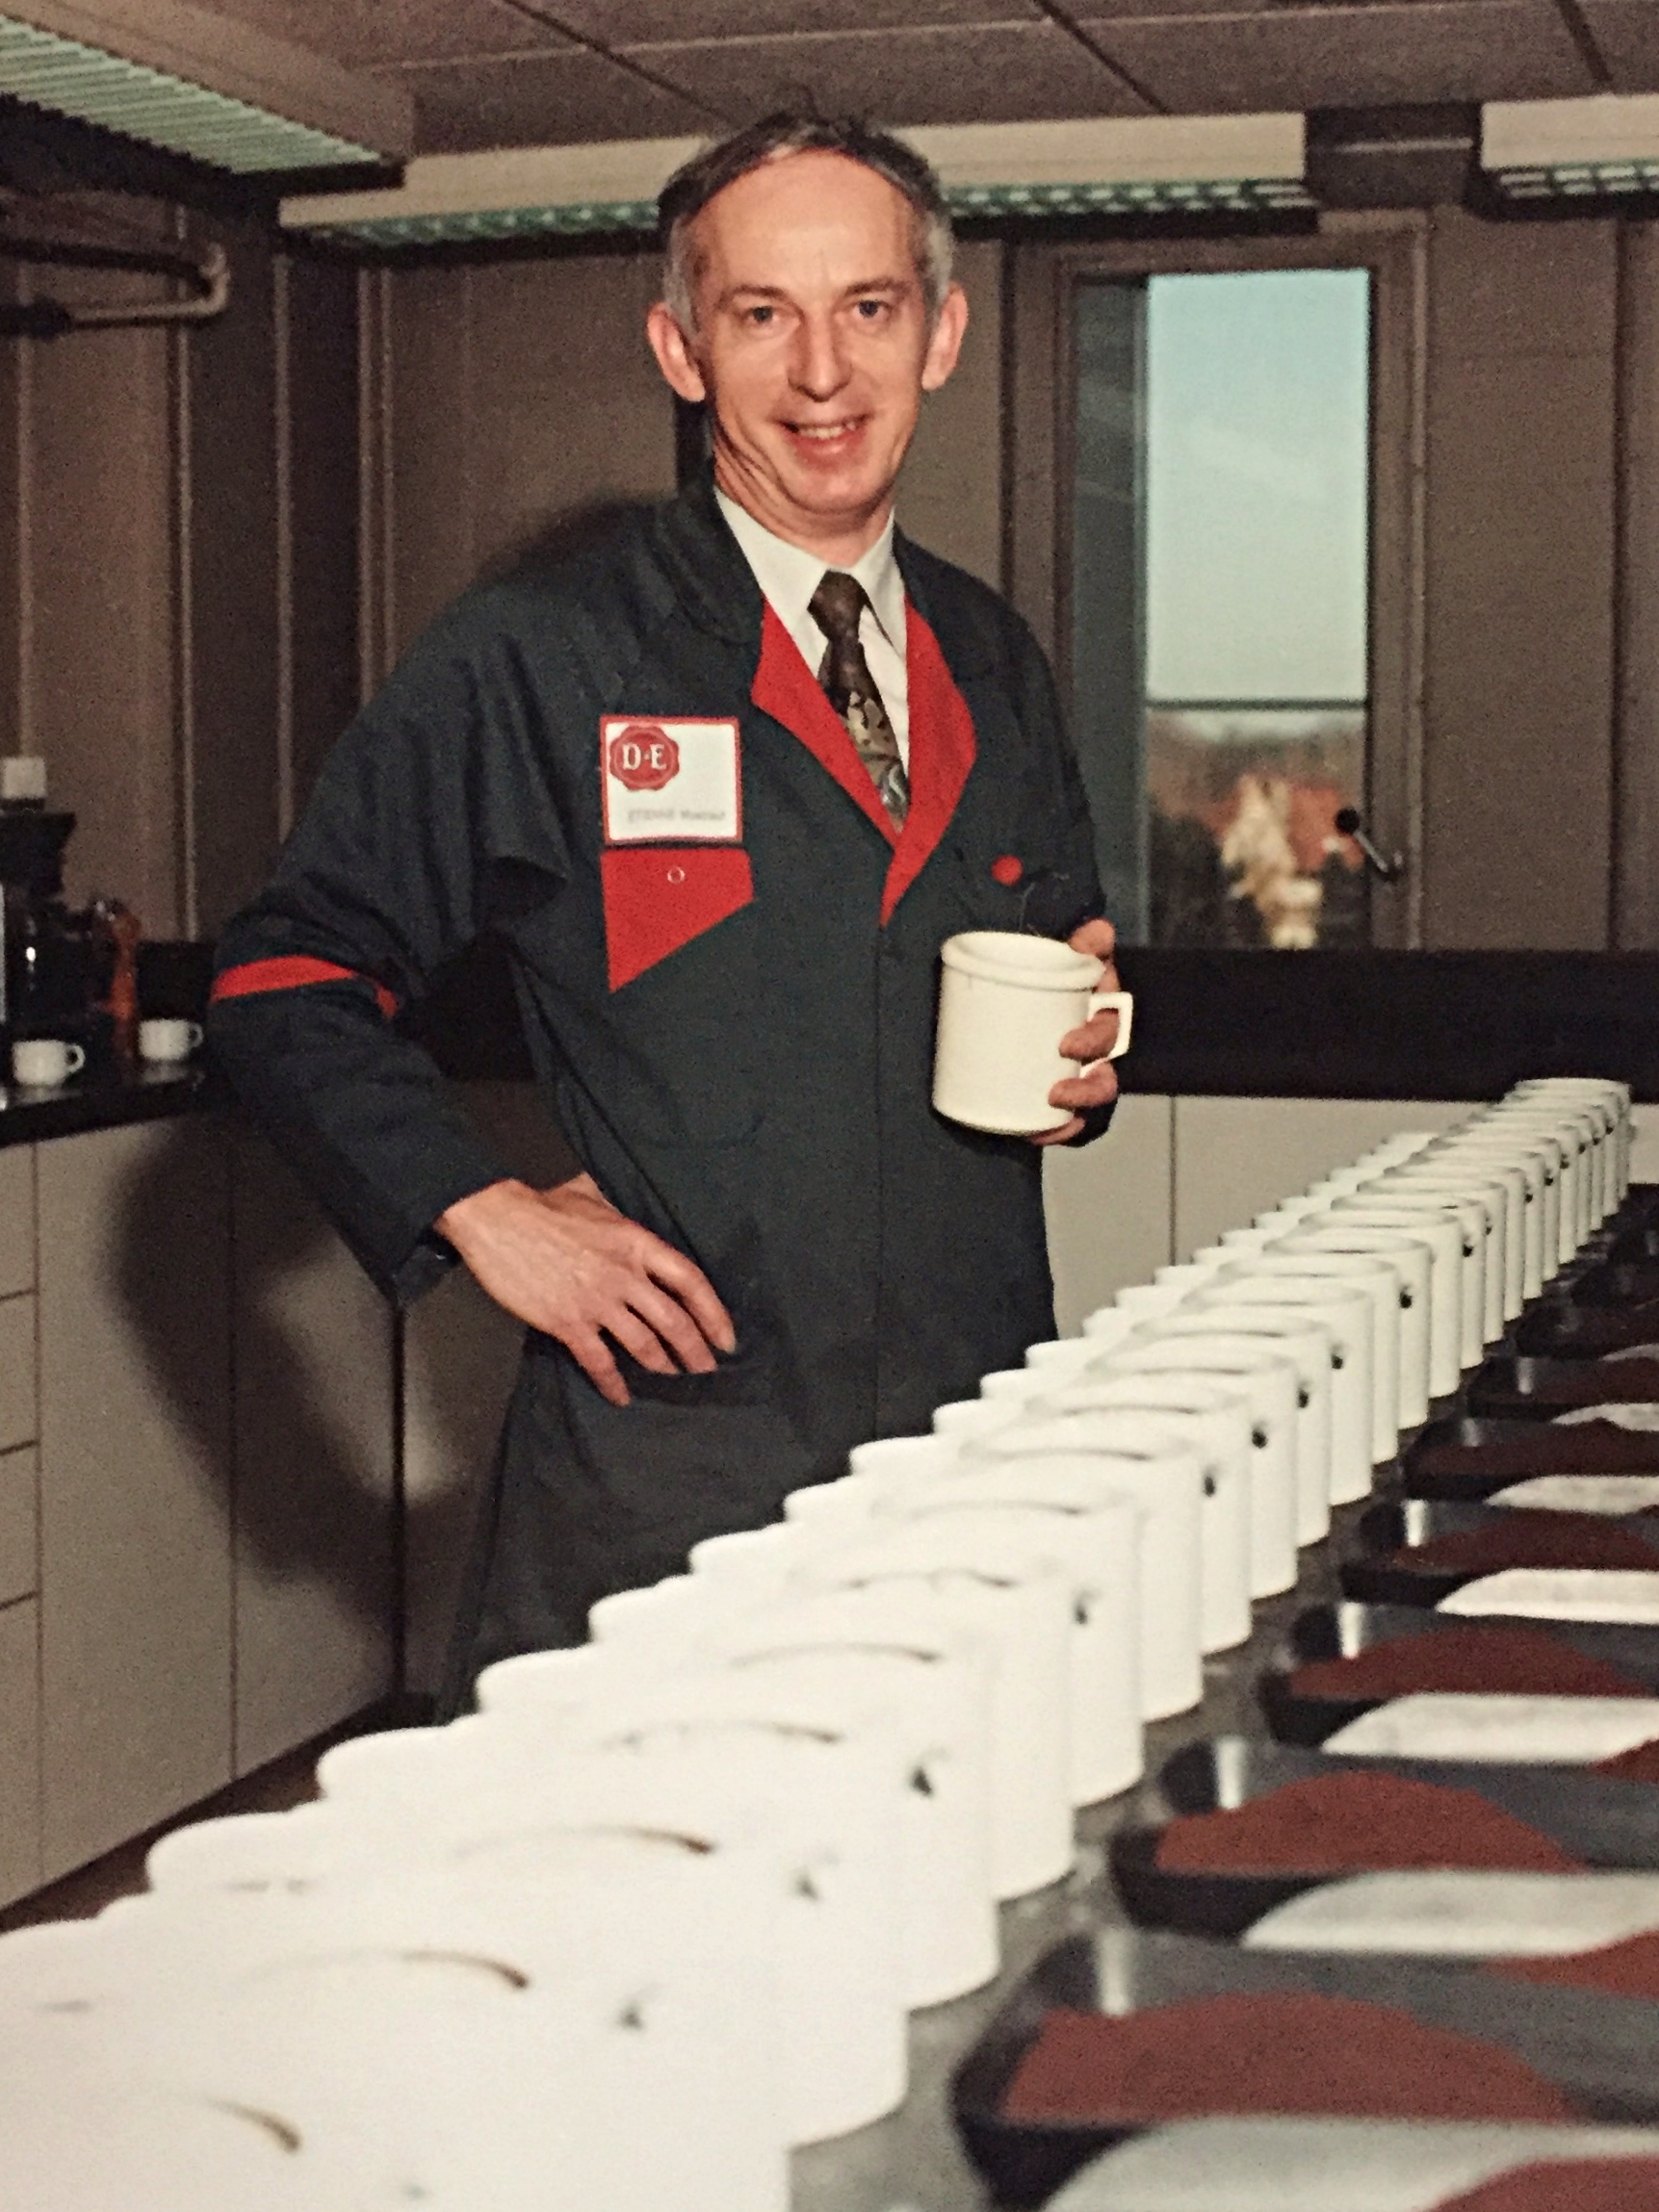 Etienne proefde vaak honderden koffies op één dag. Deze foto werd getrokken voor zijn 25 jaar dienst bij Douwe Egberts, in 1998